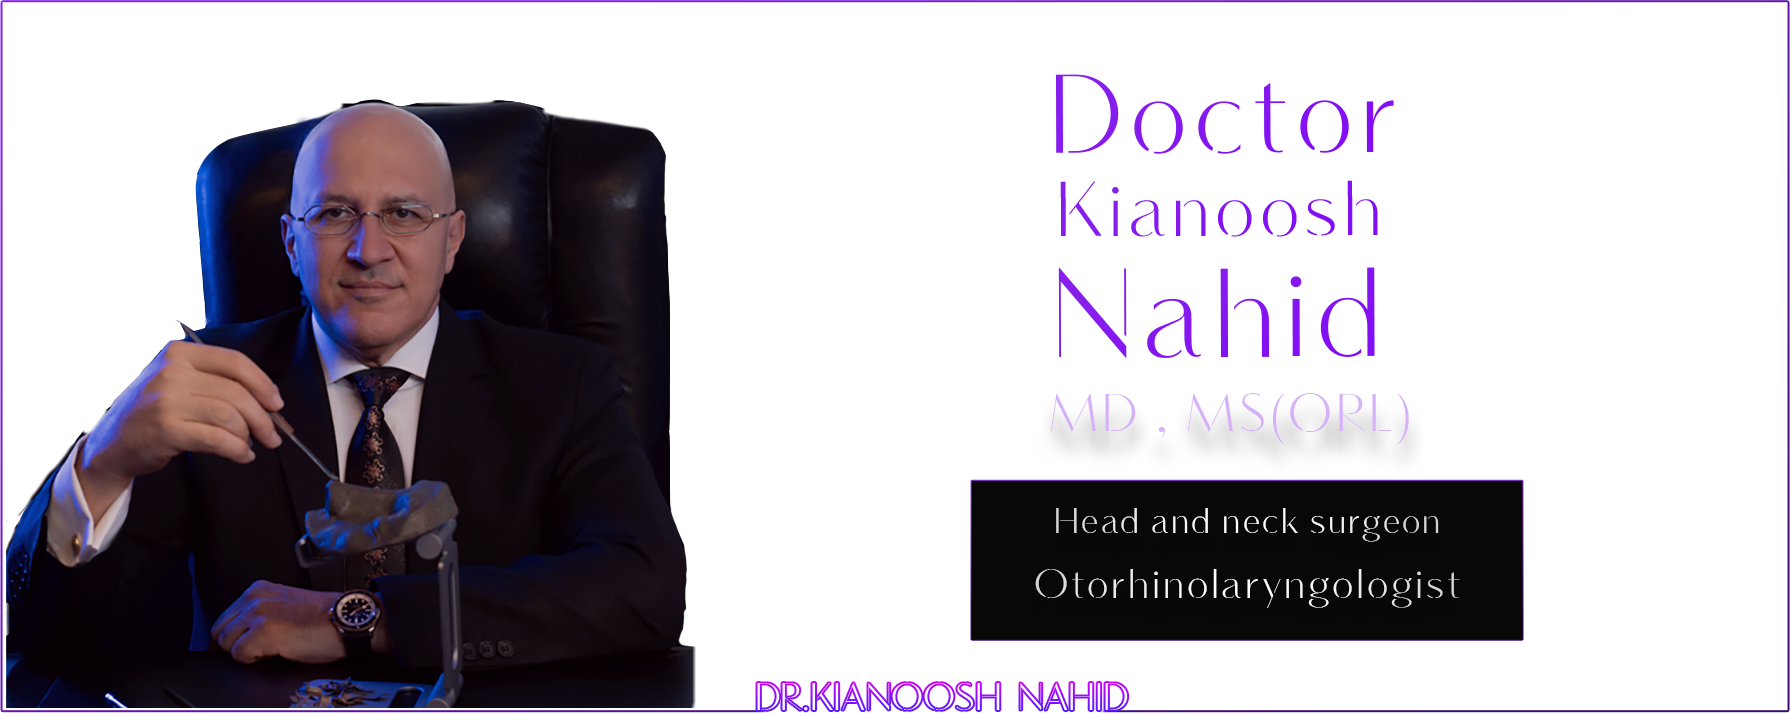 dr kianoosh nahid